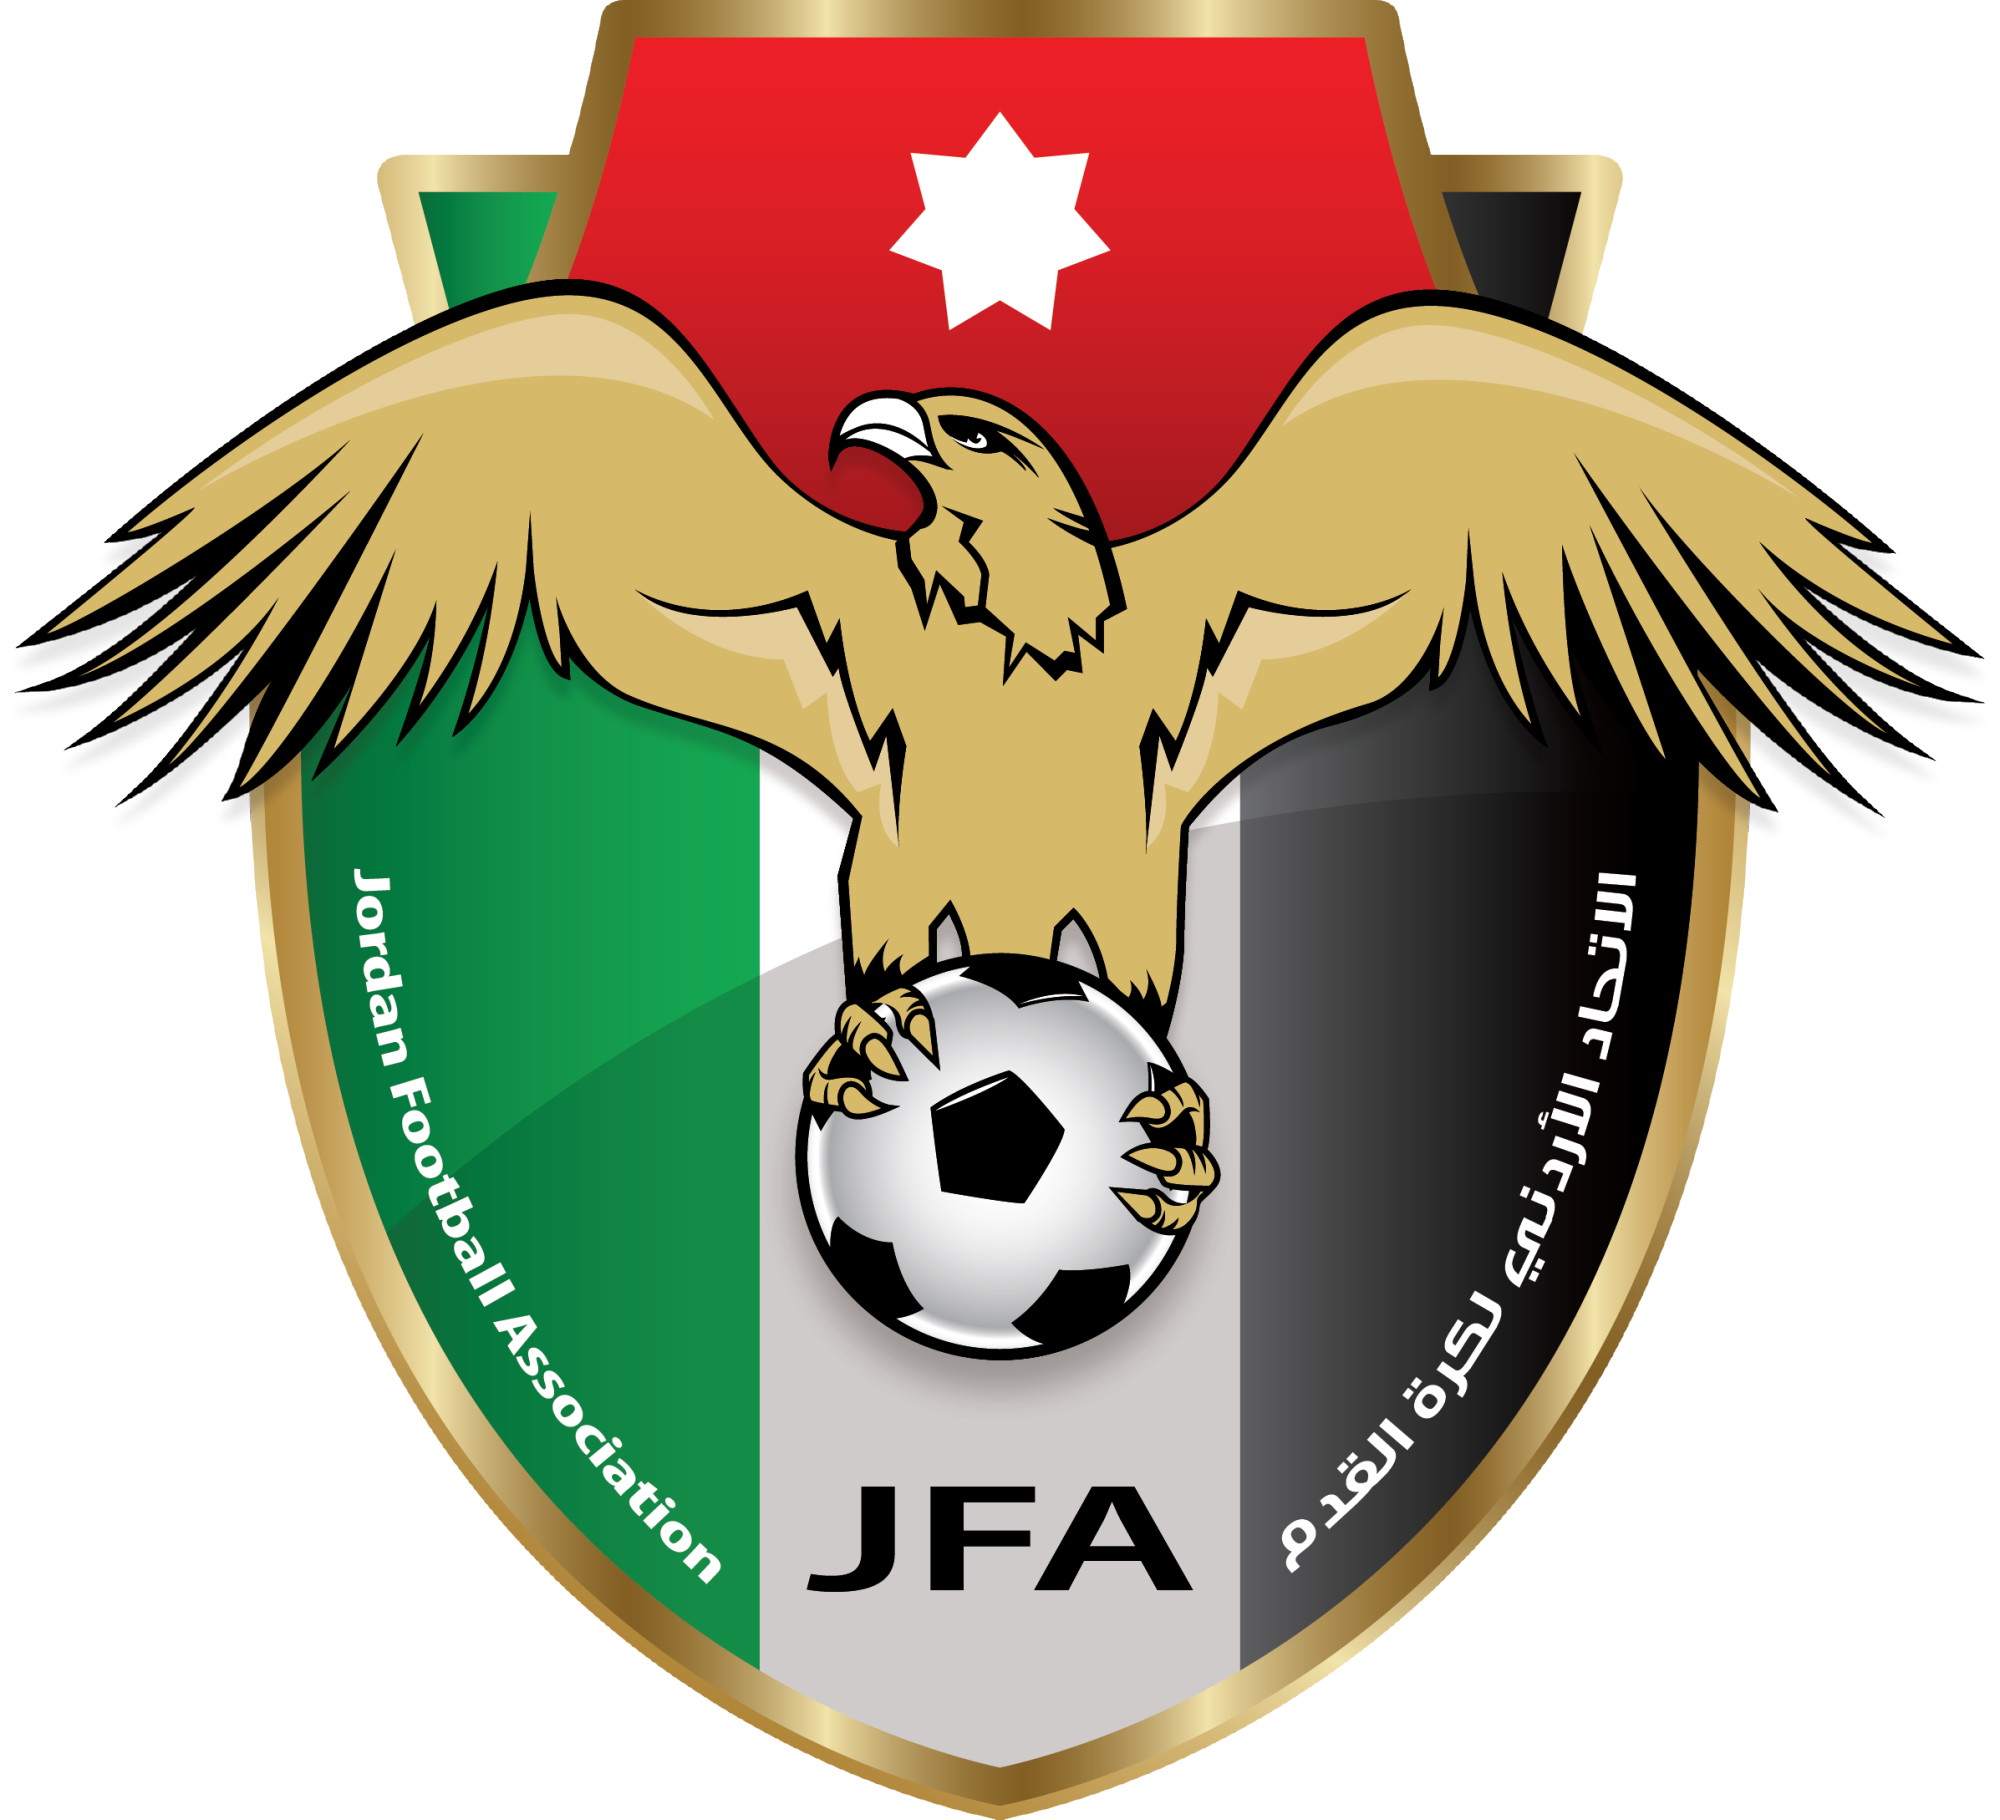 約旦國家女子足球隊